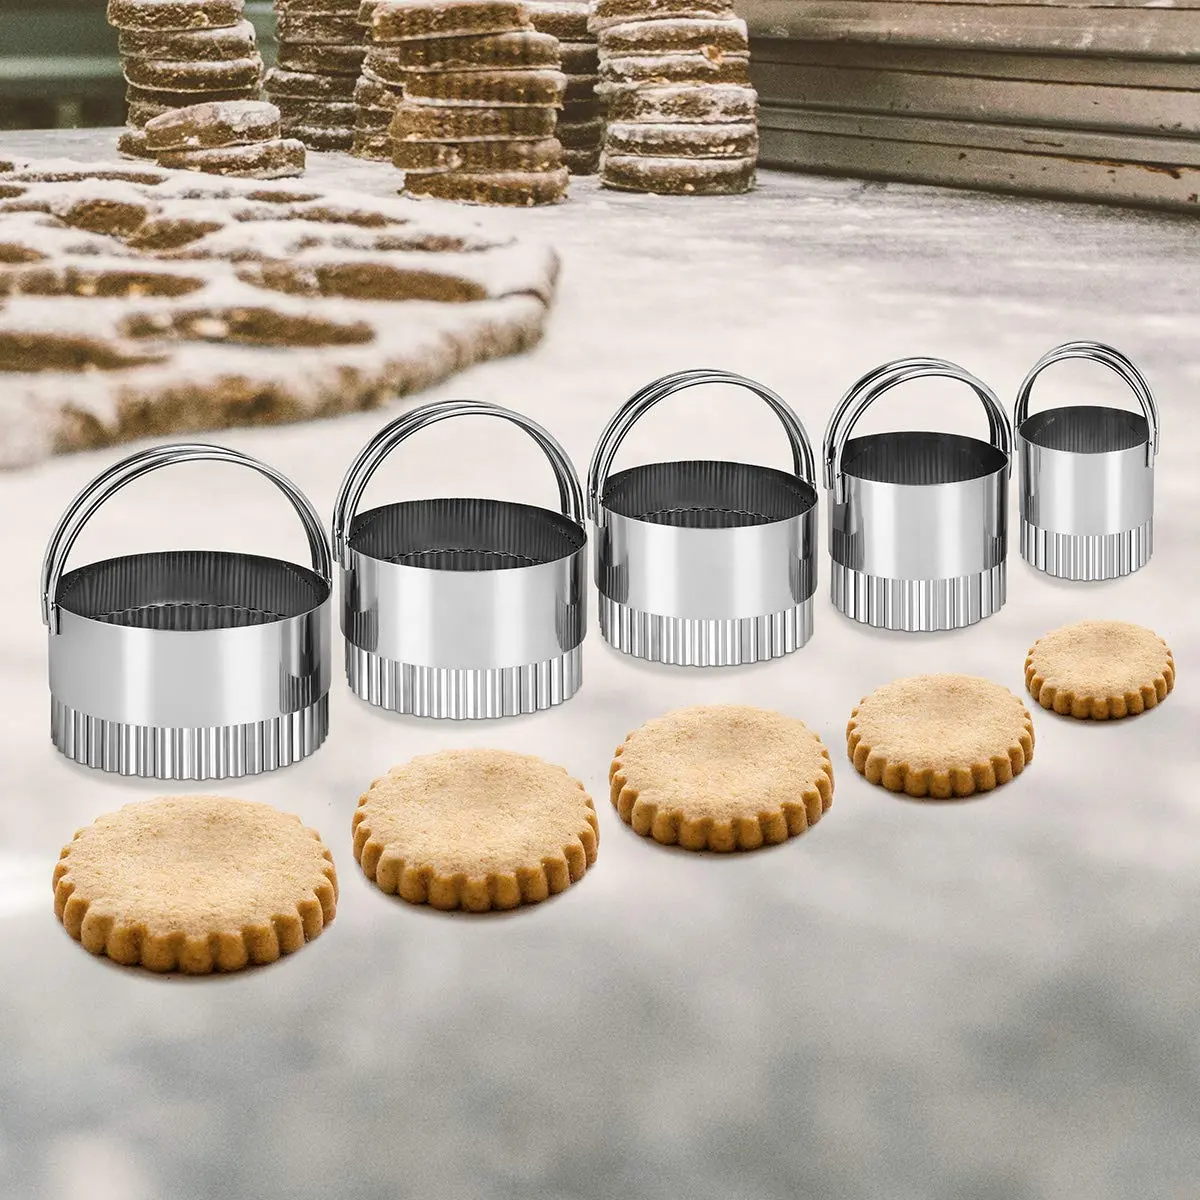 Set Natal Baru Press Gingerbread dan Embosser Food Grade Cooky dengan Cetakan Cookie Cutter